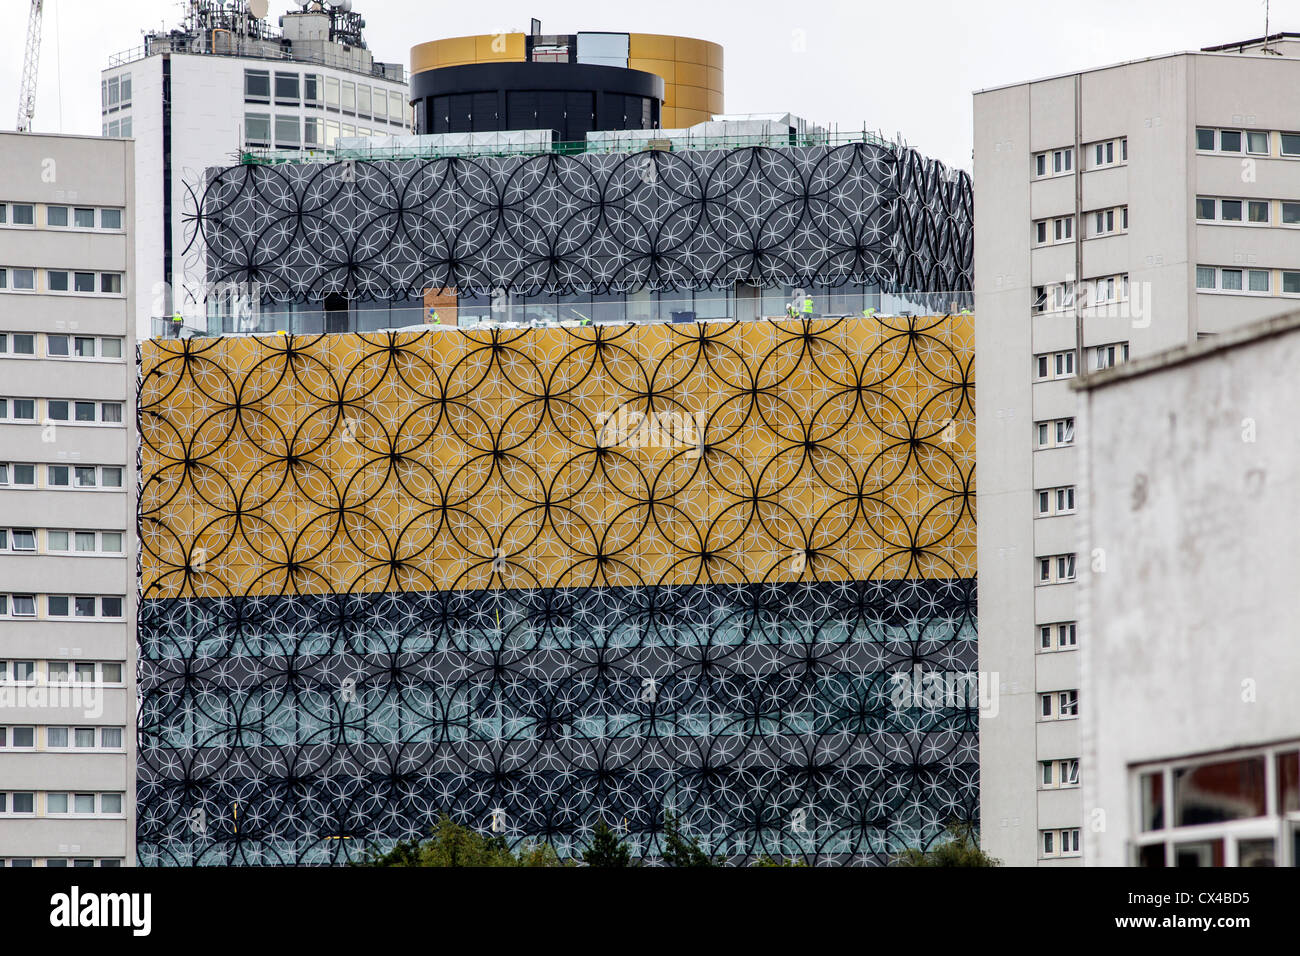 La Biblioteca recién construida de Birmingham, diseñado por los arquitectos oficina Mecanoo. Chapado de oro y filigrana cubre el edificio. Foto de stock